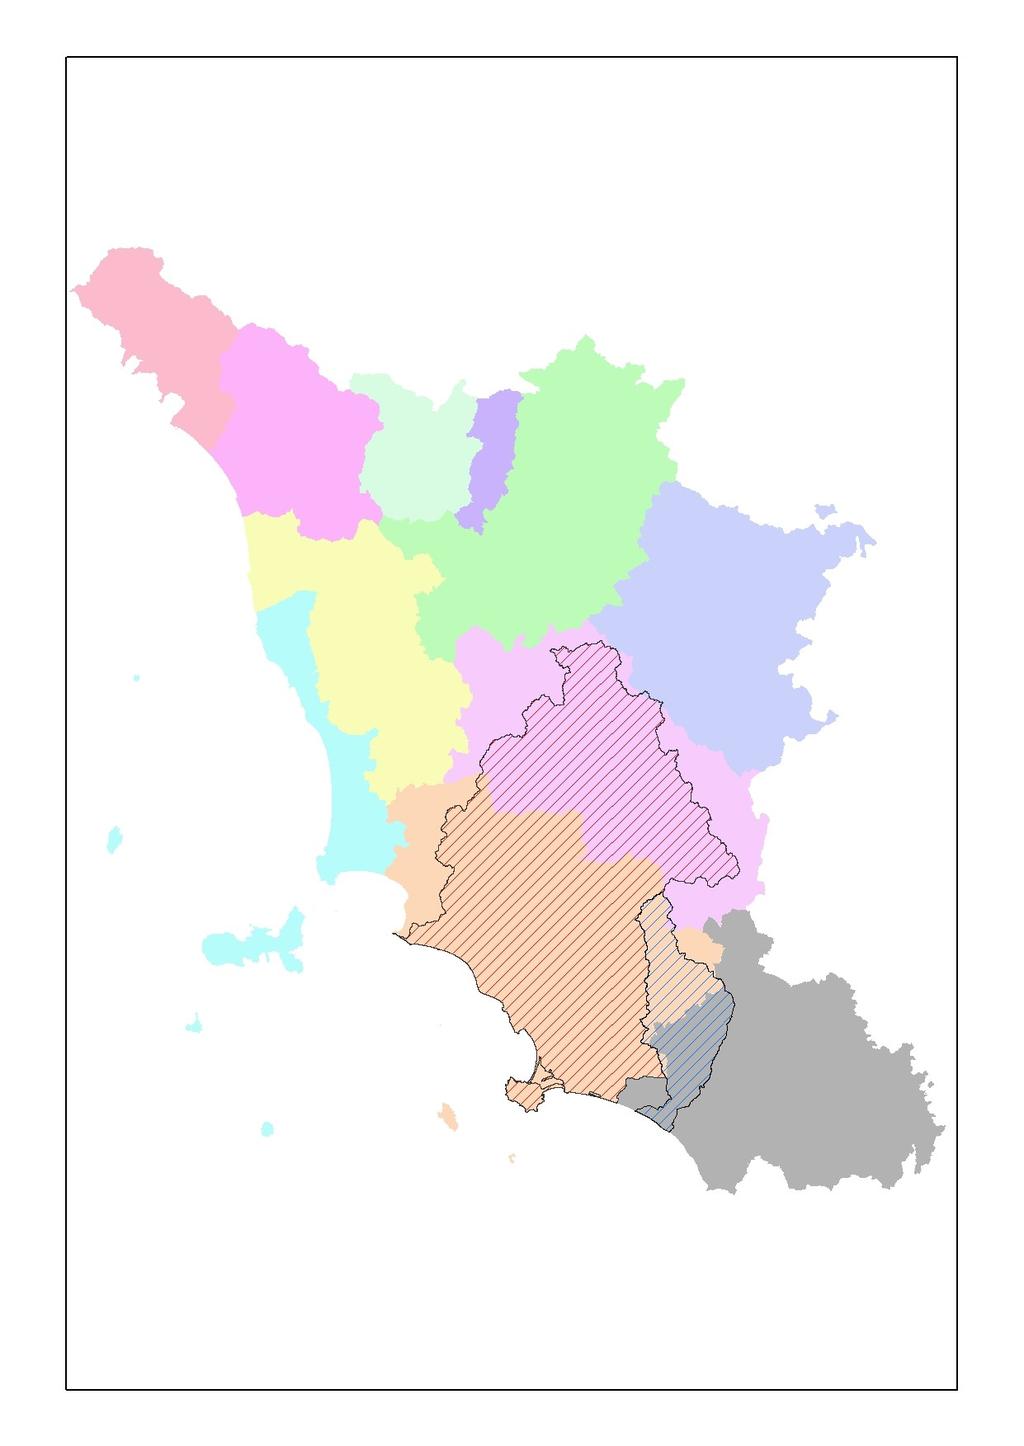 BACINO REGIONALE OMBRONE CARATTERISTICHE Superficie: 5000 kmq 2 Province (Grosseto, Siena) 49 Comuni